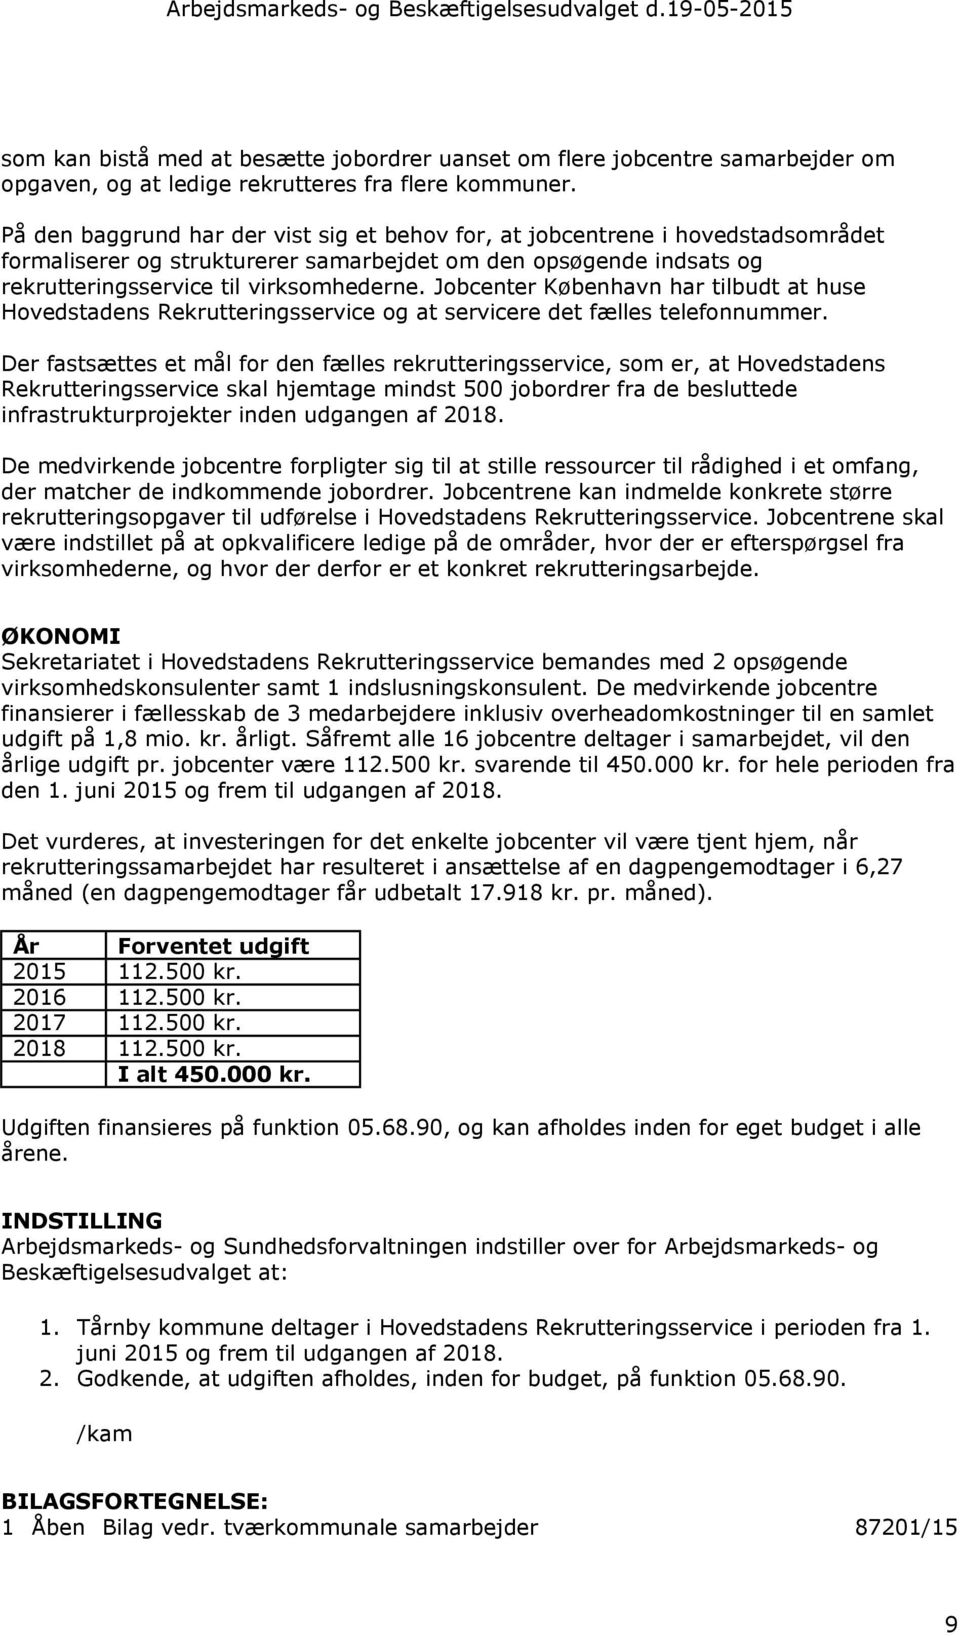 Jobcenter København har tilbudt at huse Hovedstadens Rekrutteringsservice og at servicere det fælles telefonnummer.